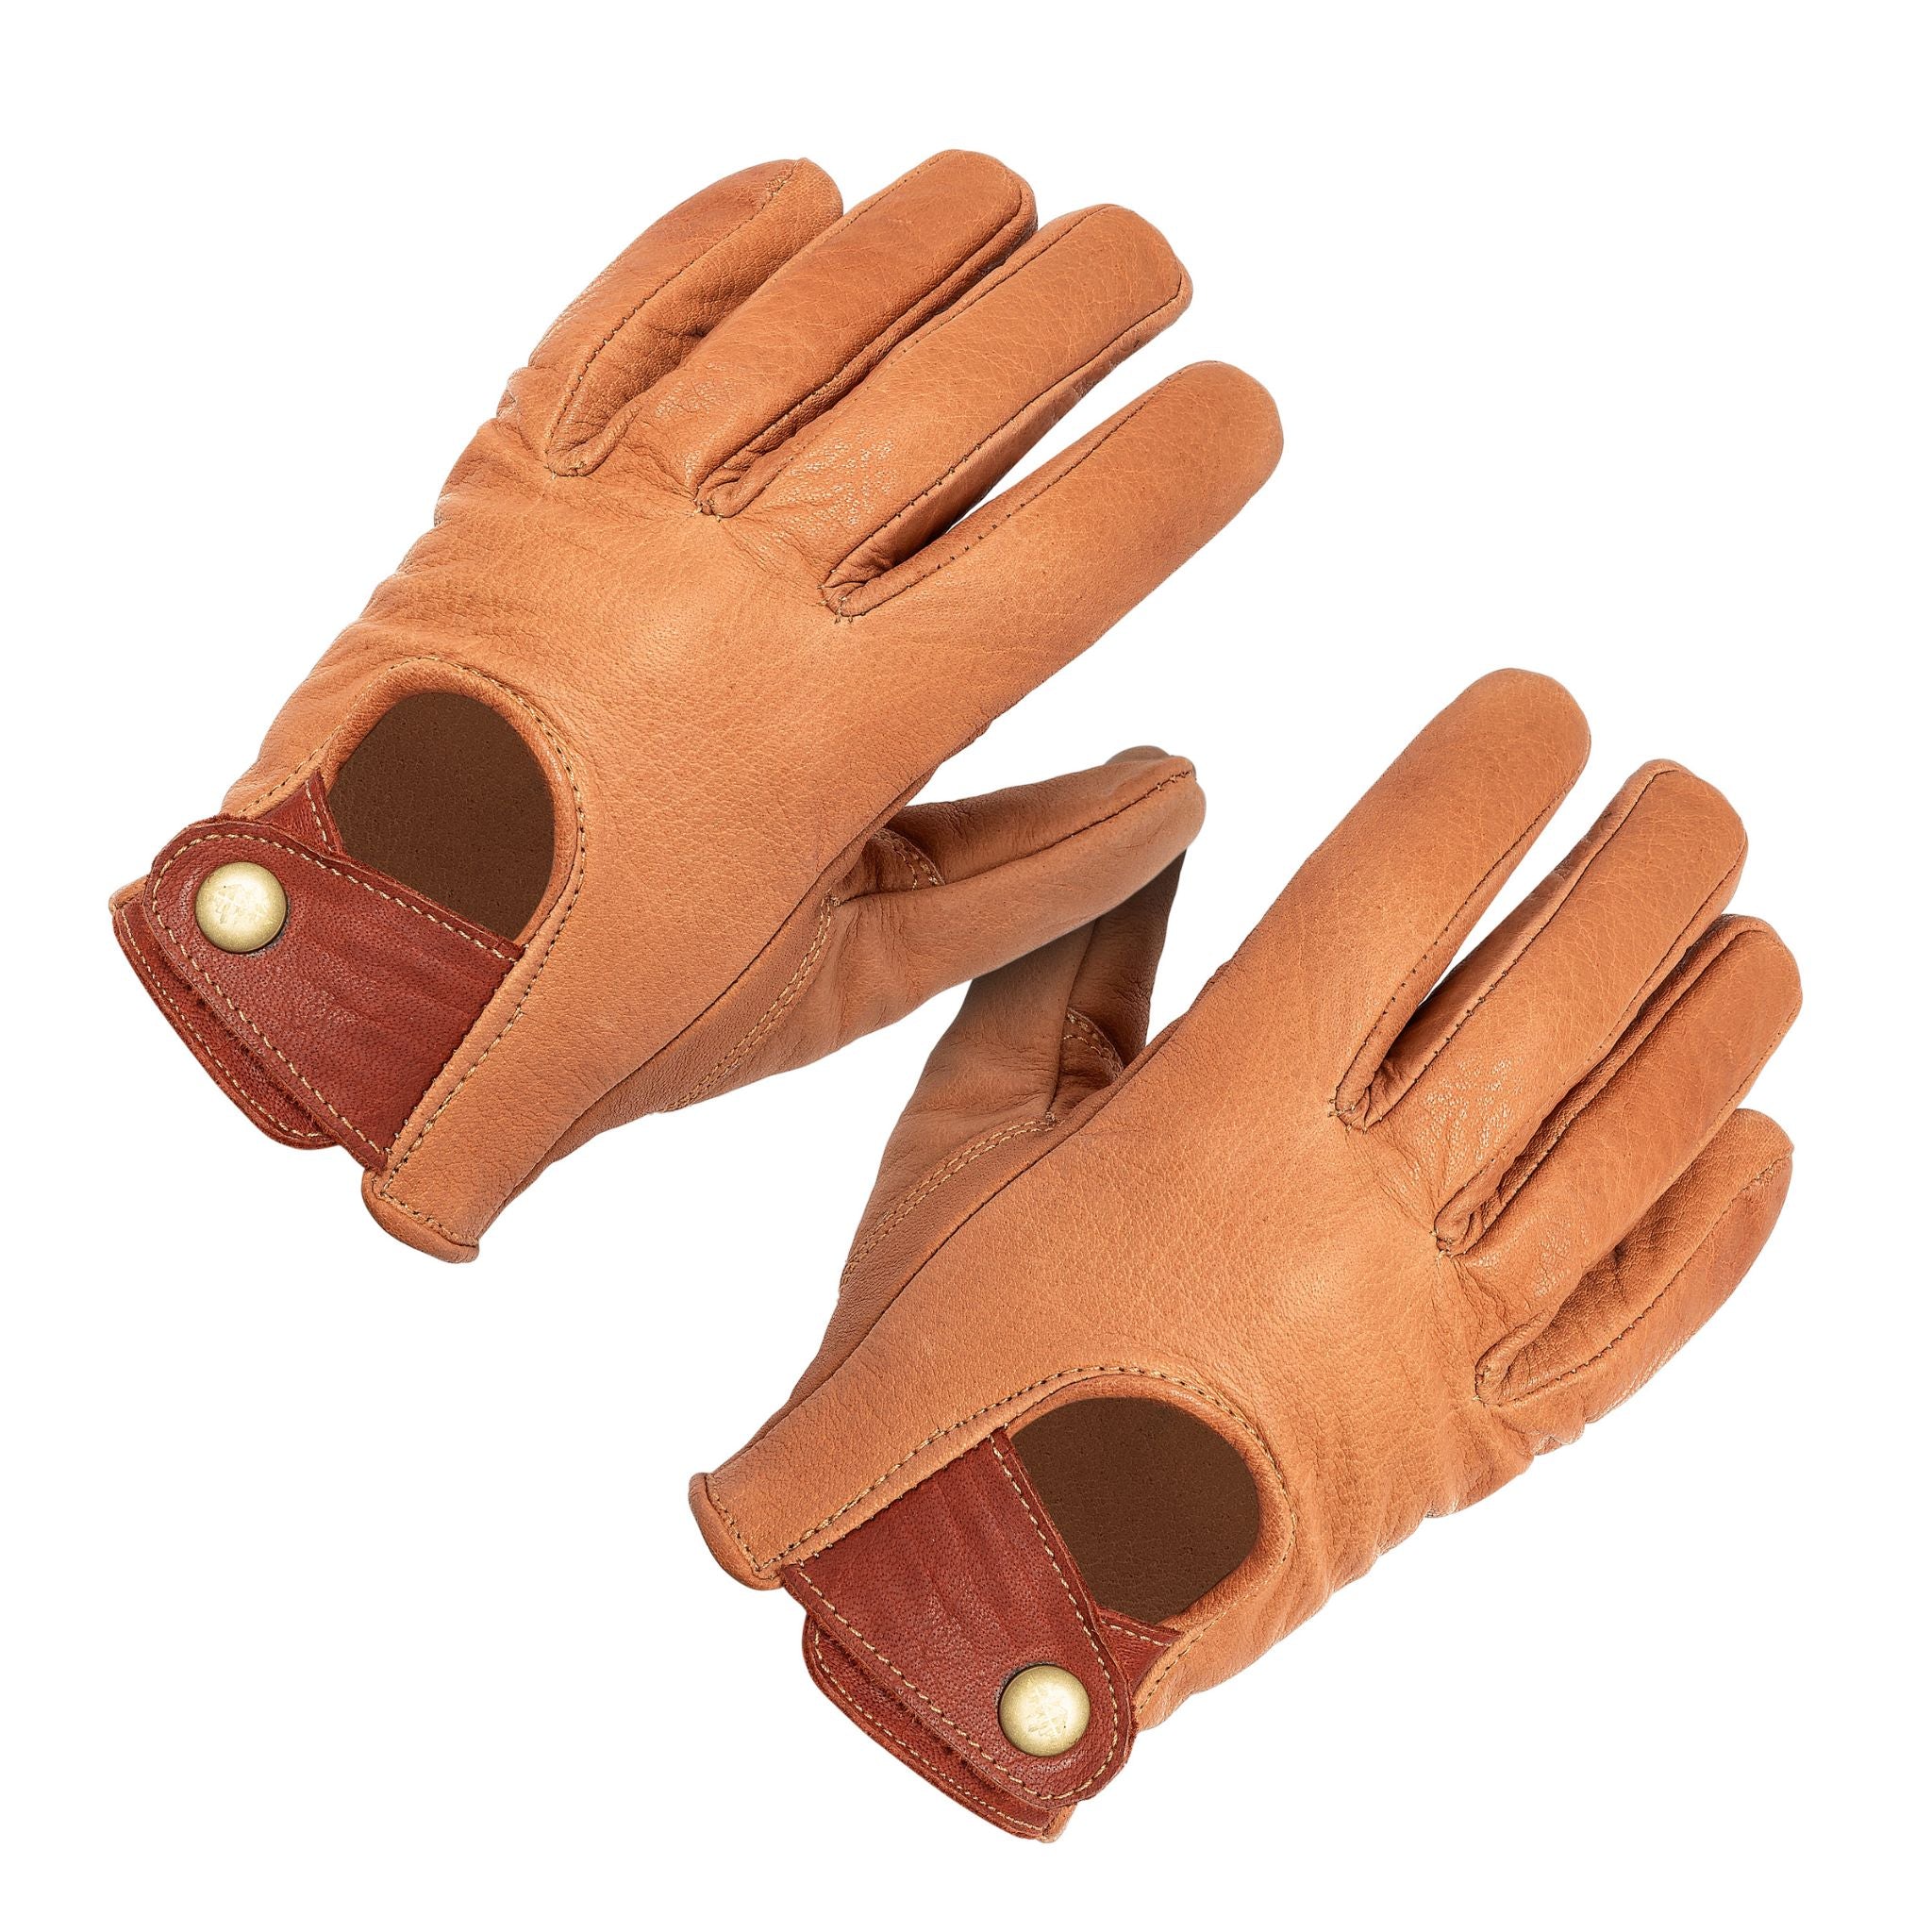 Brown Leather Fingerless Gloves Unisex Gloves for Women or Men 